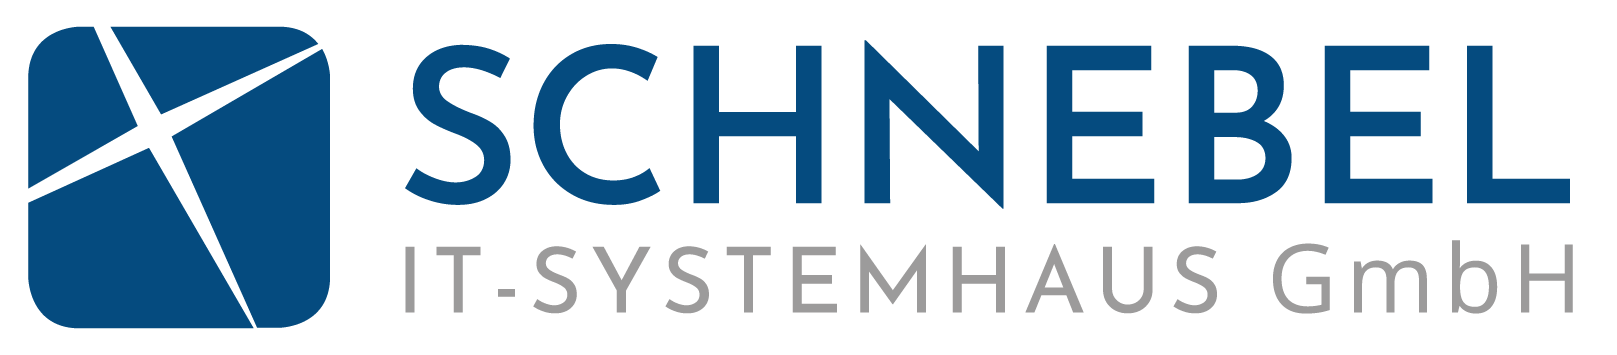 schnebel-it-systemhaus-logo